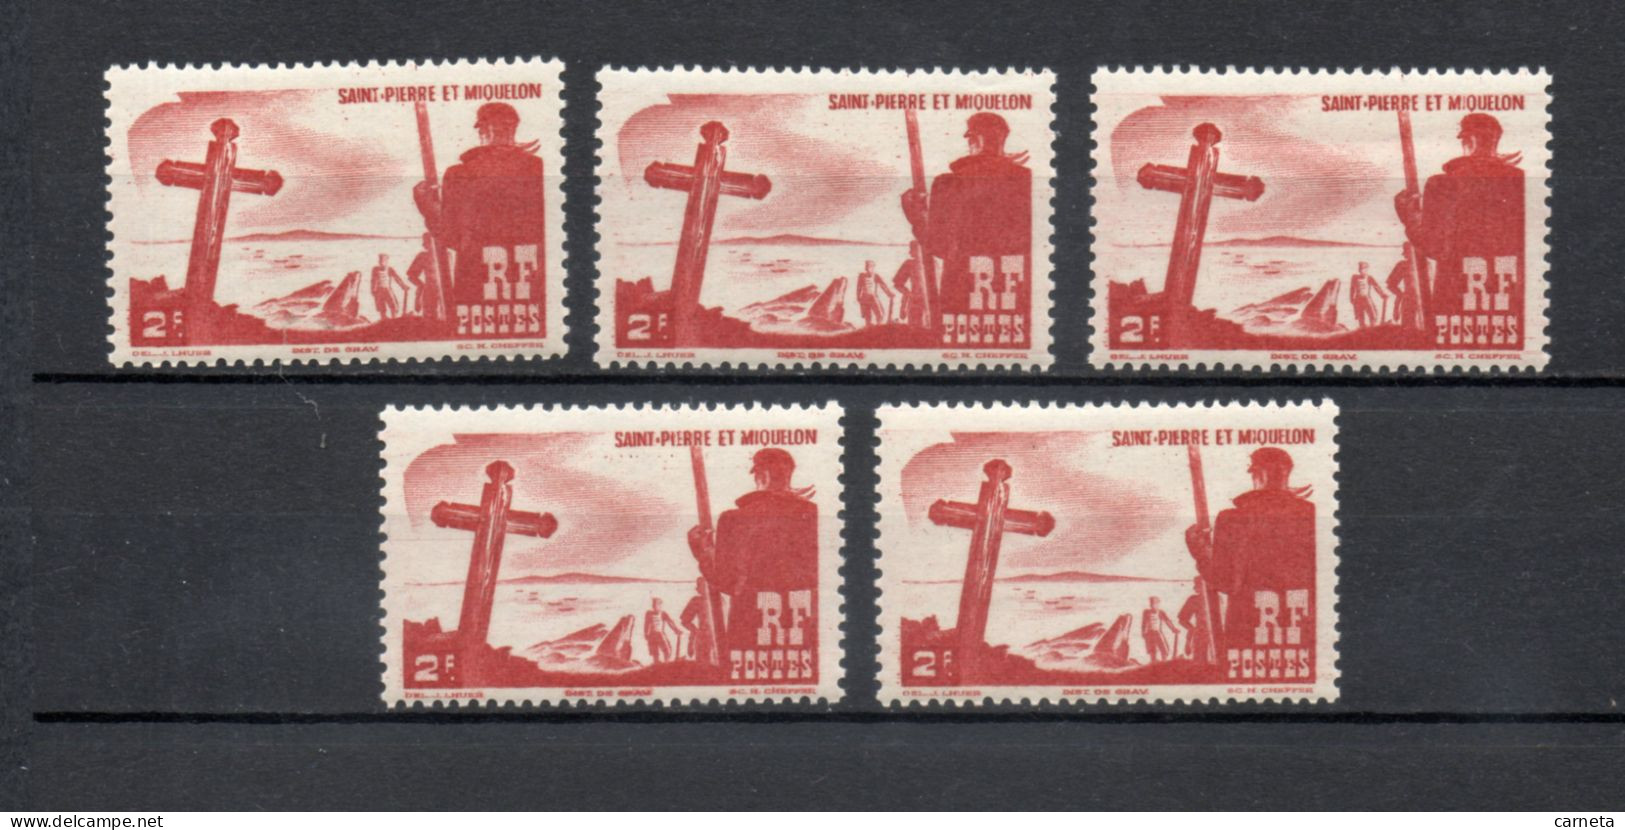 SAINT PIERRE ET MIQUELON N° 334  CINQ EXEMPLAIRES  NEUF SANS CHARNIERE COTE  10.00€     MER CROIX - Unused Stamps